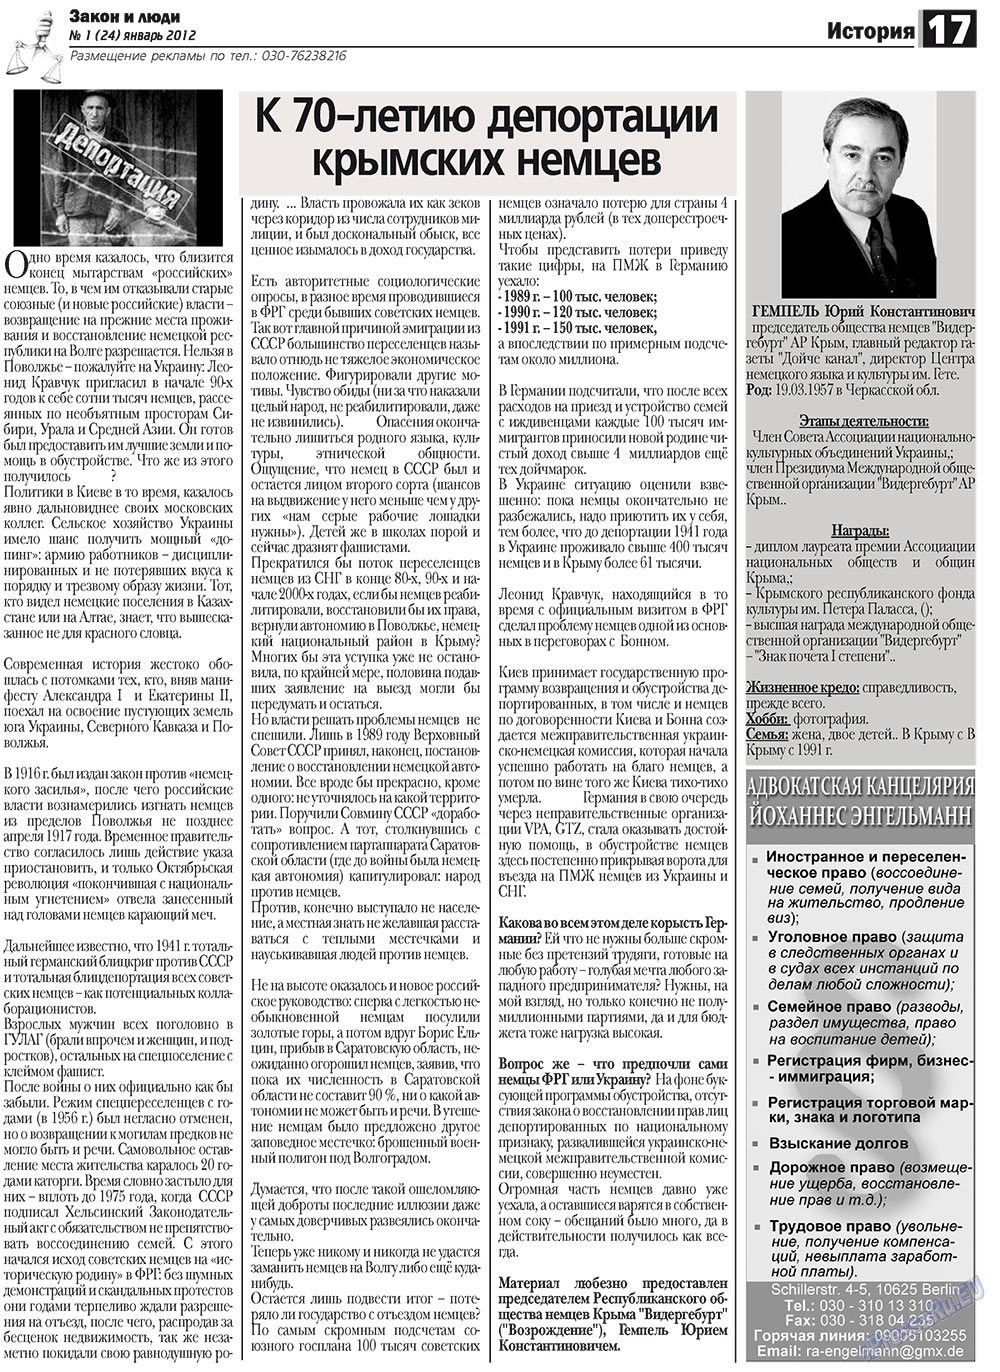 Закон и люди, газета. 2012 №1 стр.17